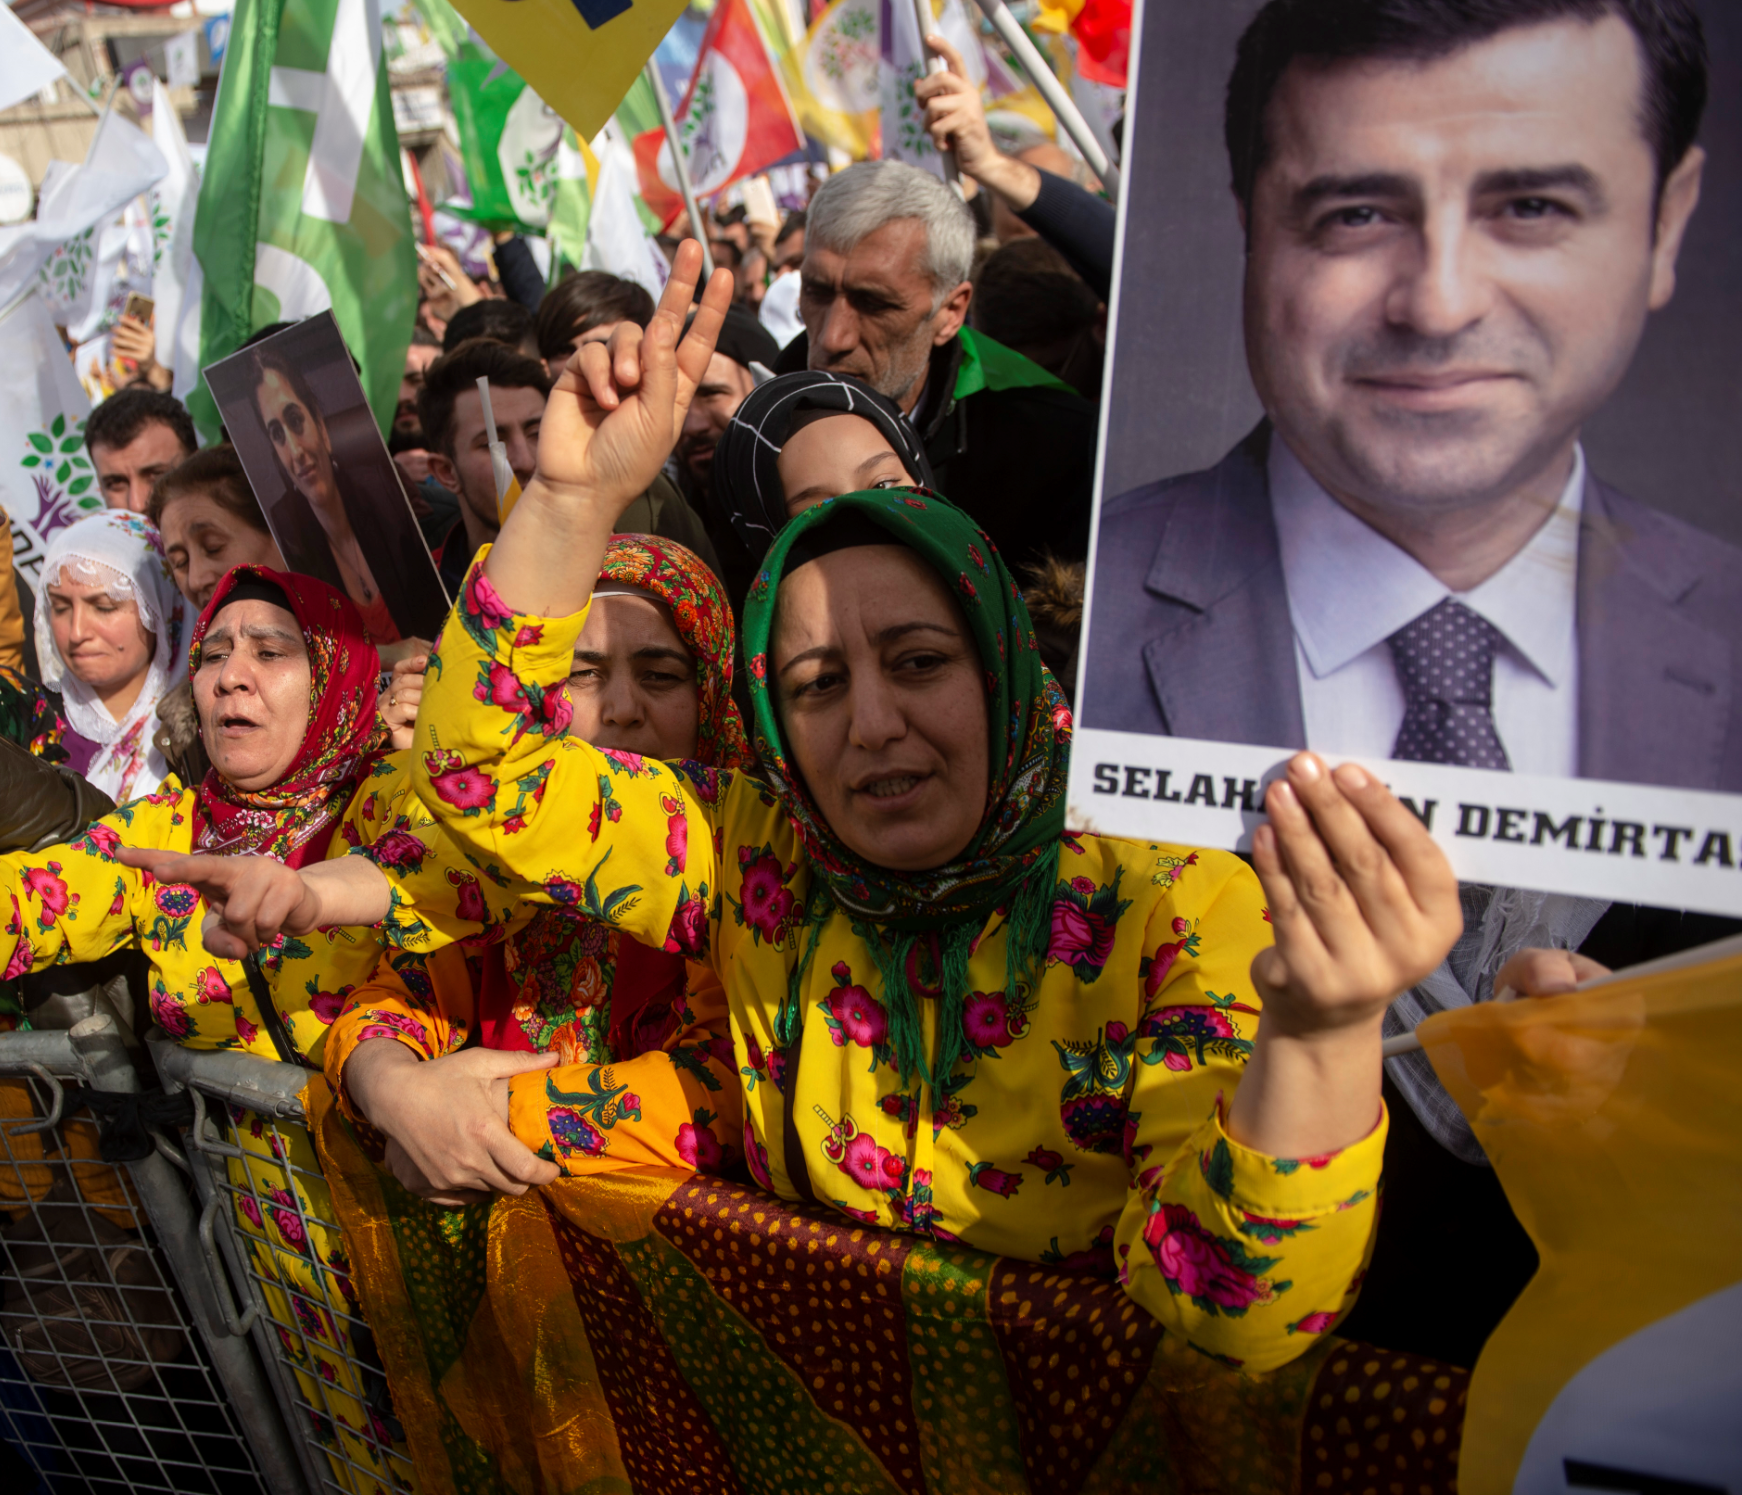 أنصار حزب الشعوب الديمقراطي يحملون صورة دميرتاش أثناء حضورهم تجمعاً لـ"السلام والعدالة" باسطنبول في 3 فبراير 2019